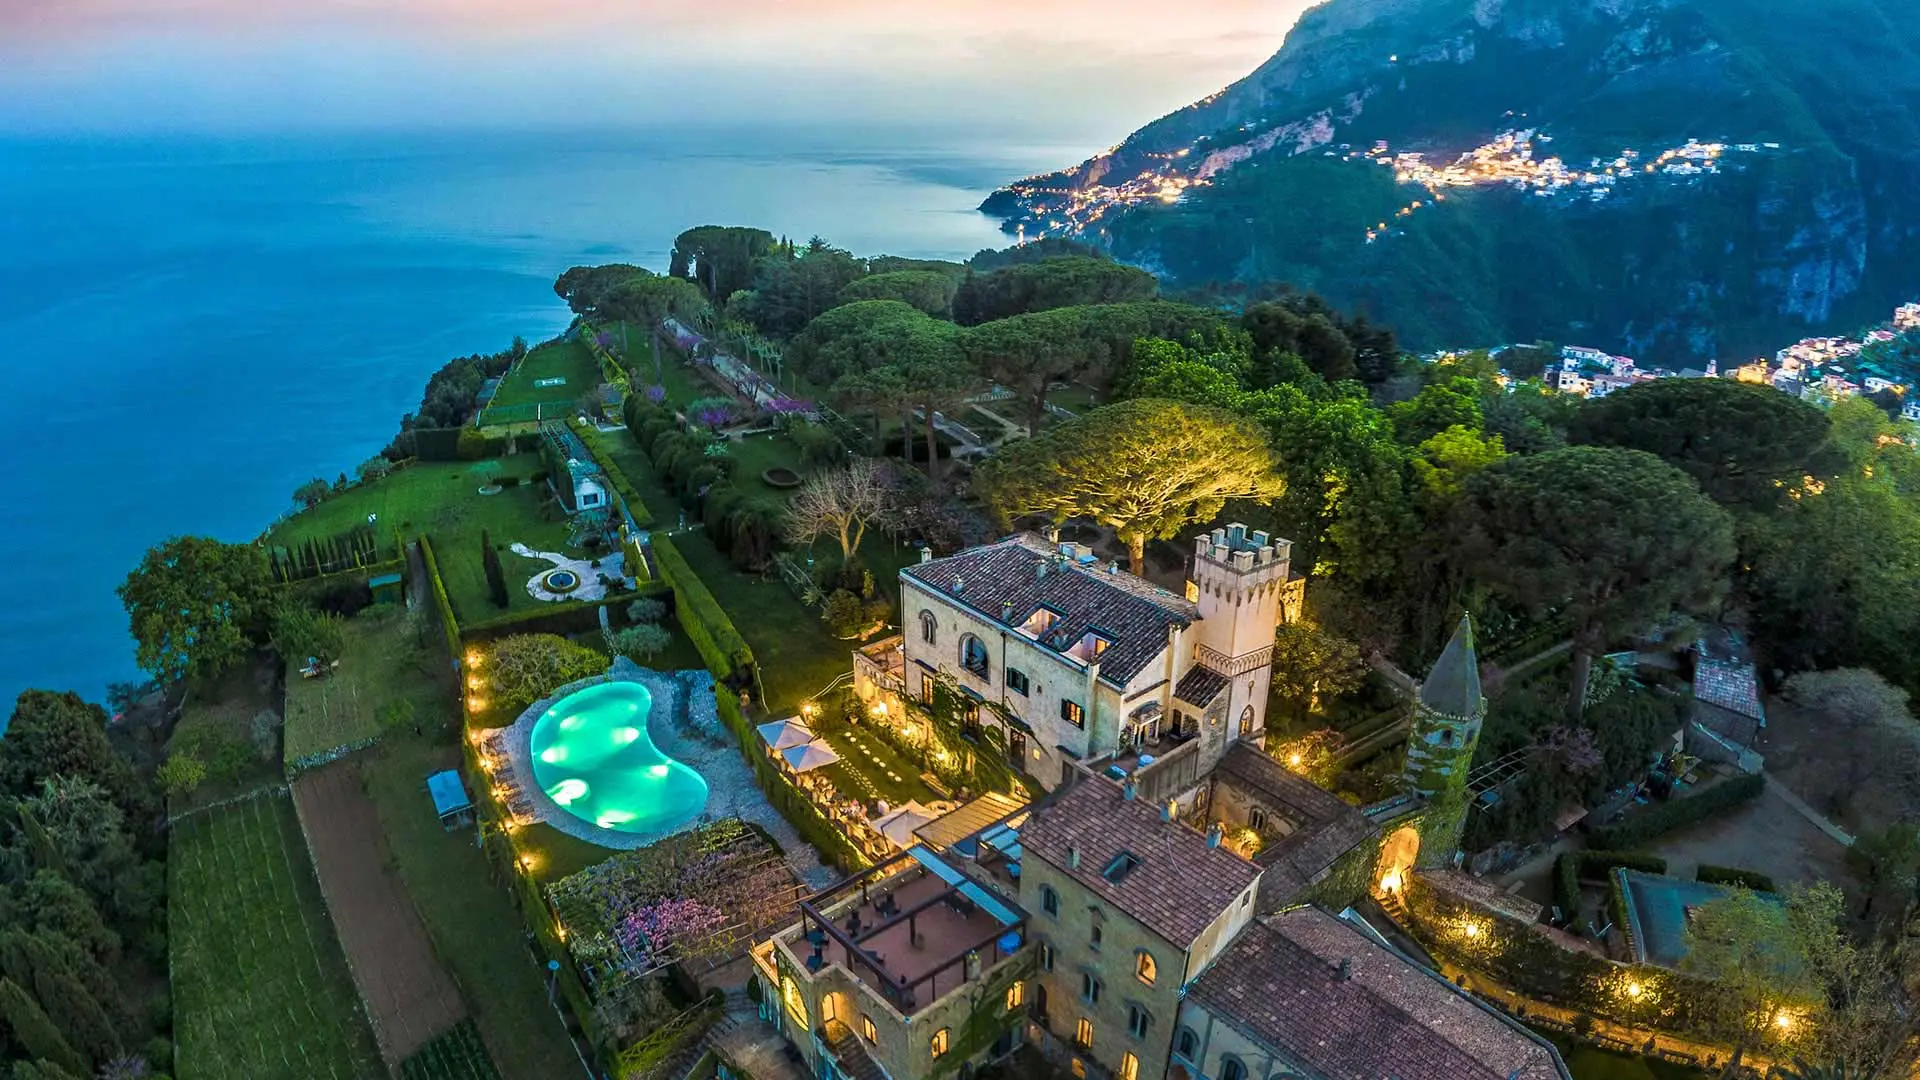 Hotel Villa Cimbrone Amalfi coast